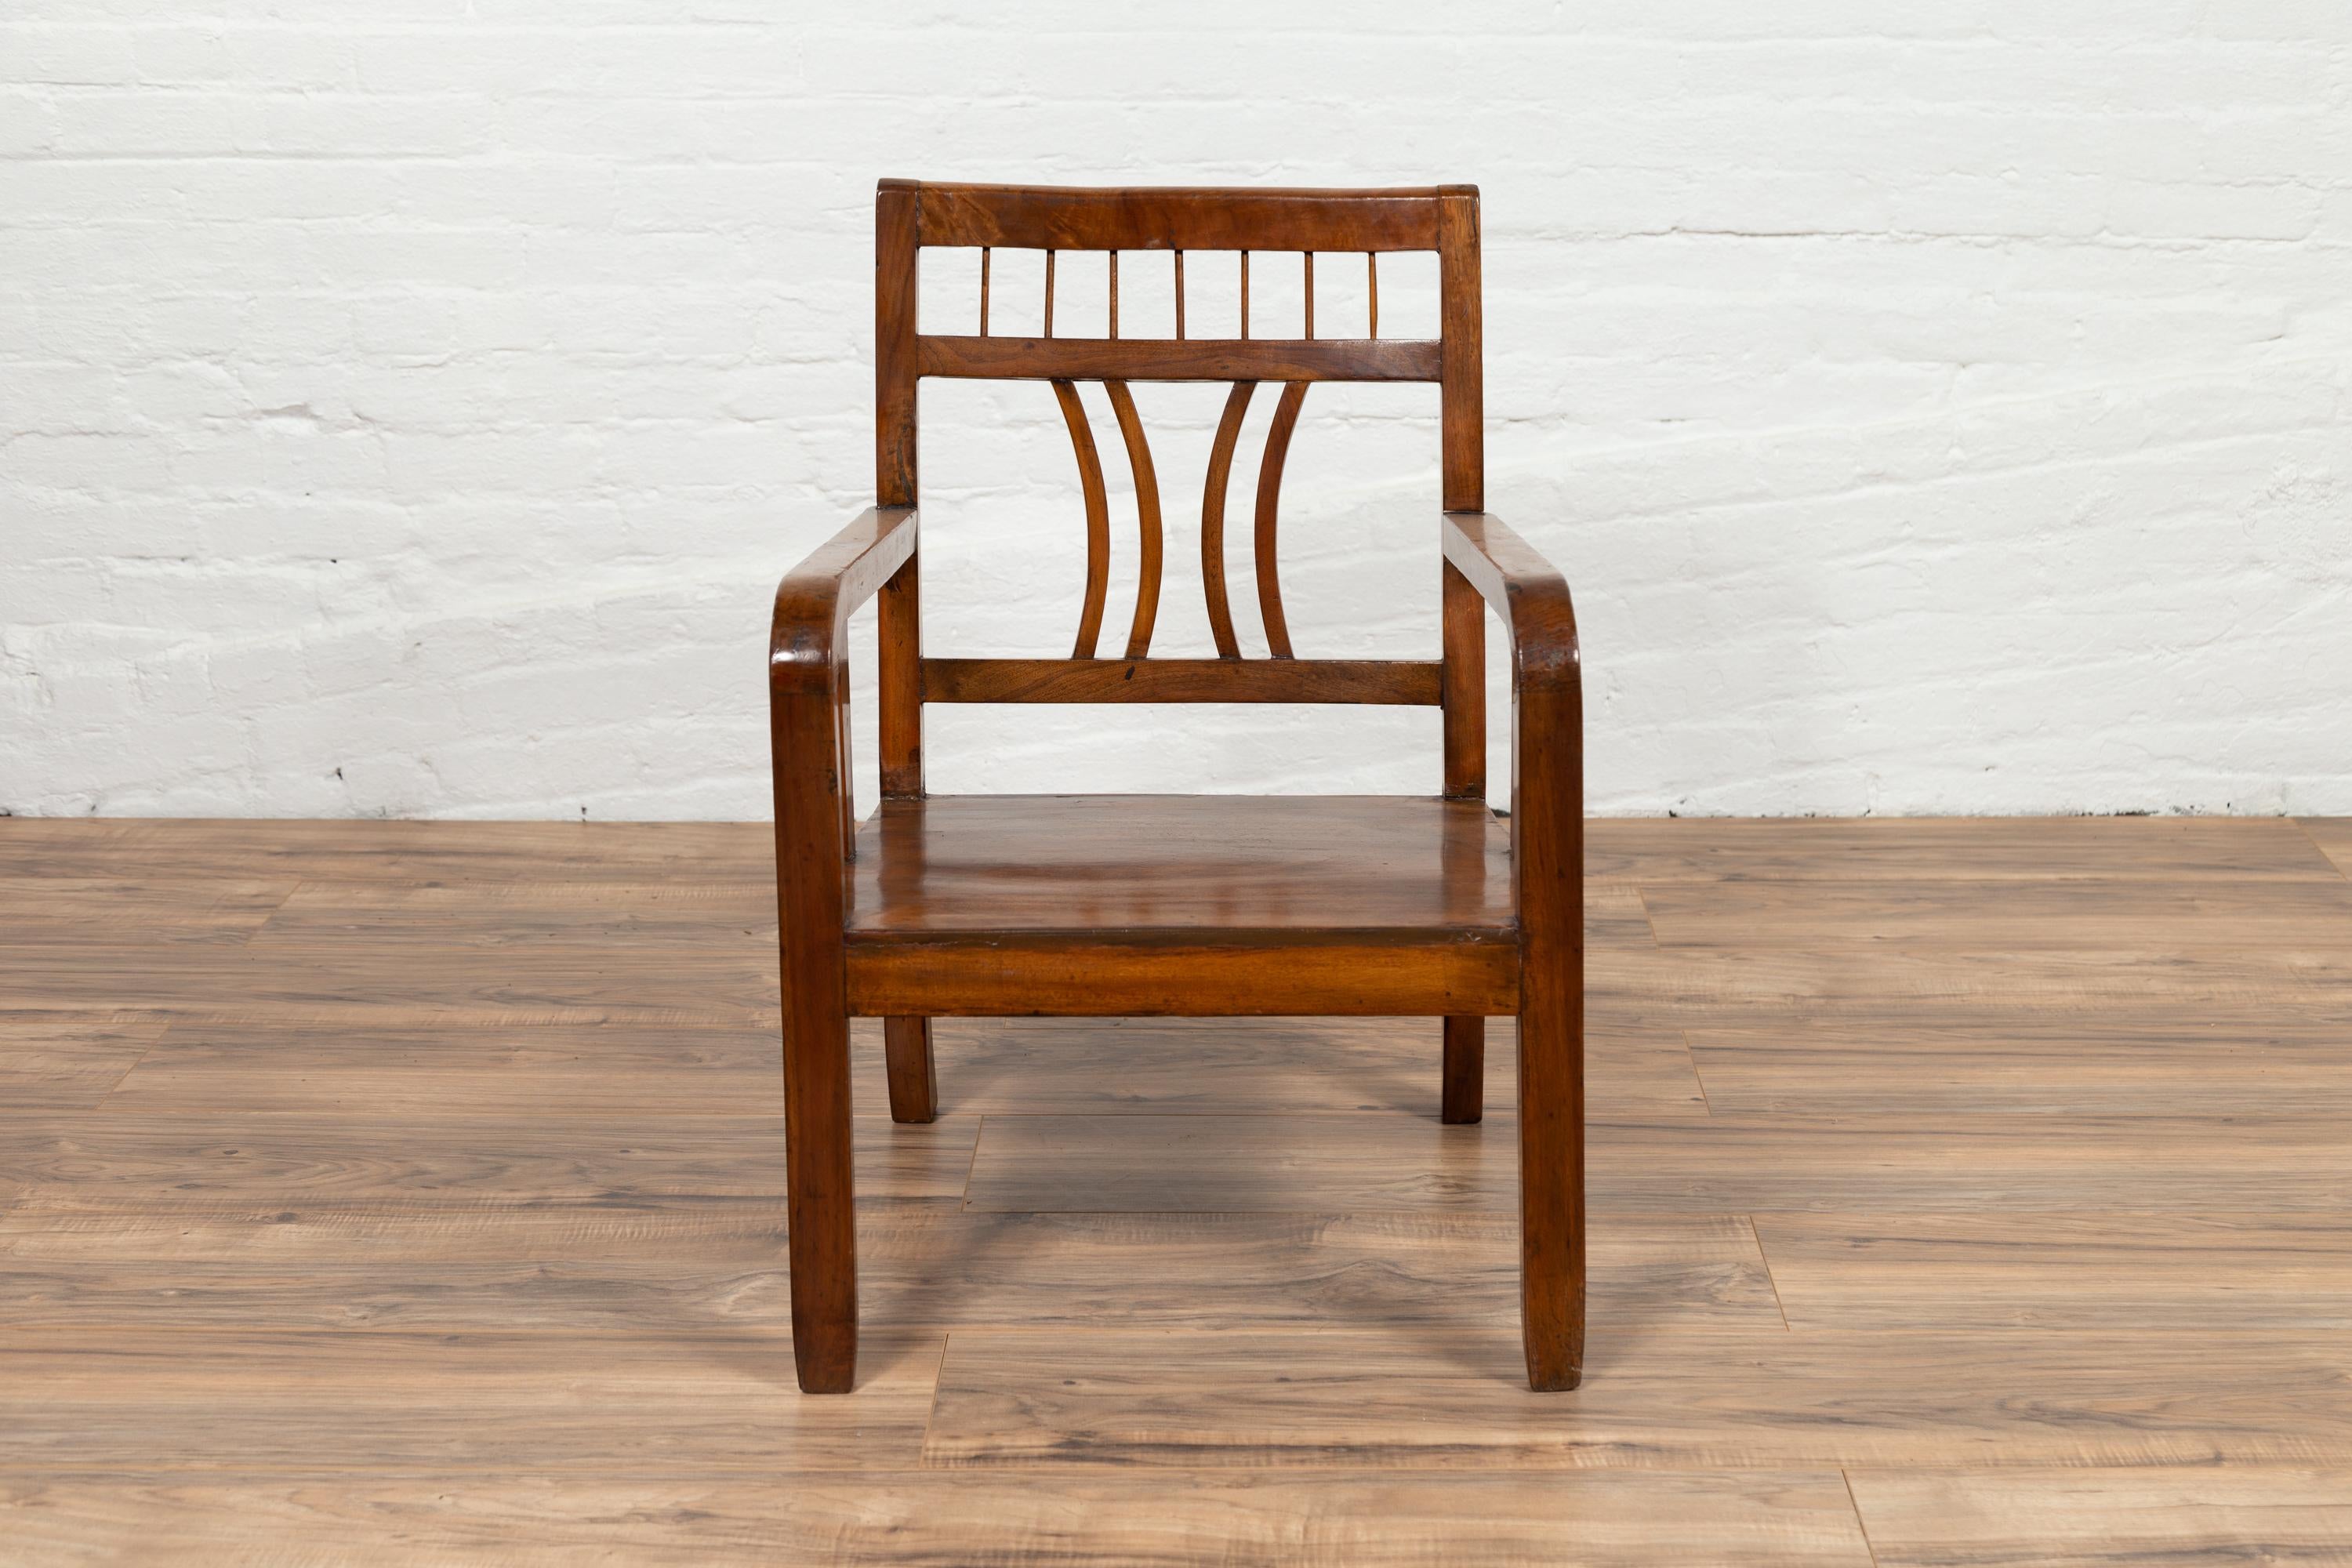 Ein chinesischer Vintage-Sessel aus Ulmenholz im Art-Déco-Stil aus der Mitte des 20. Jahrhunderts, mit durchbrochener Rückenlehne und brauner Patina. Erleben Sie die elegante Verschmelzung von Art-Déco-Design und traditionellem Ulmenholz-Handwerk